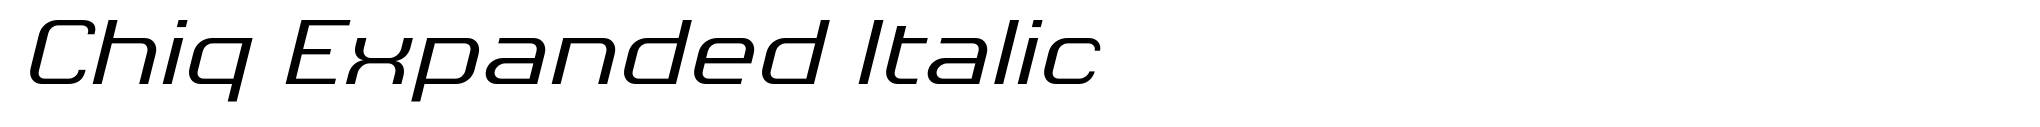 Chiq Expanded Italic image